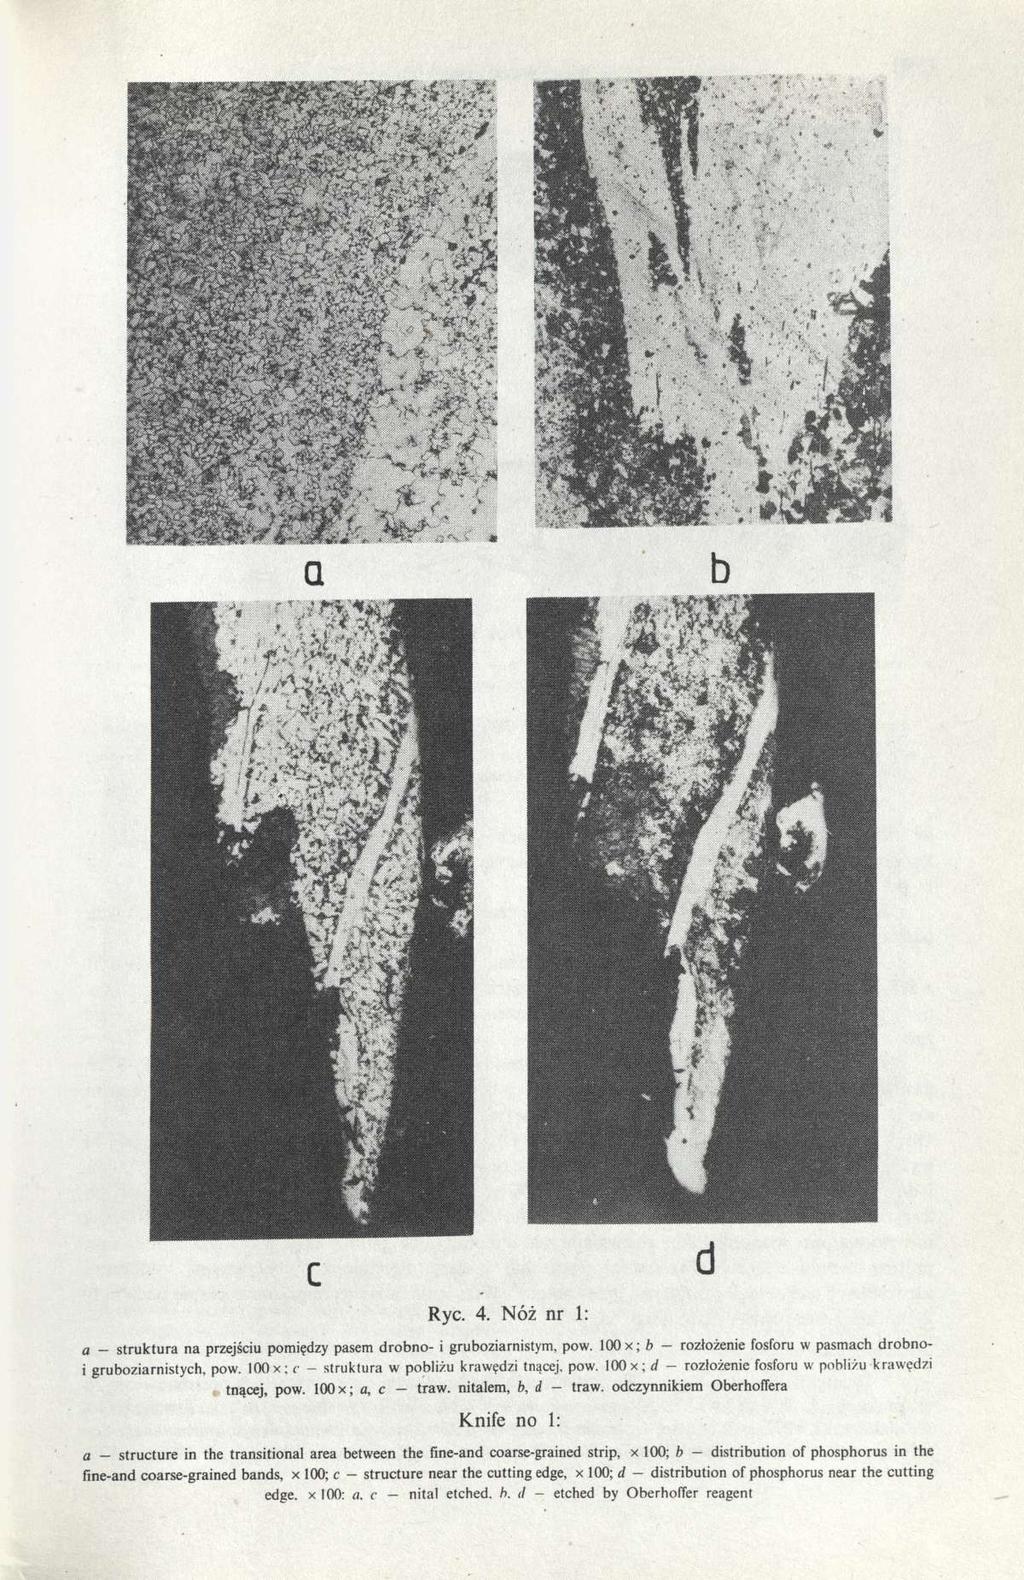 Ryc. 4. Nóż nr 1: a - struktura na przejściu pomiędzy pasem drobno- i gruboziarnistym, pow. loox; b - rozłożenie fosforu w pasmach drobnoi gruboziarnistych, pow.